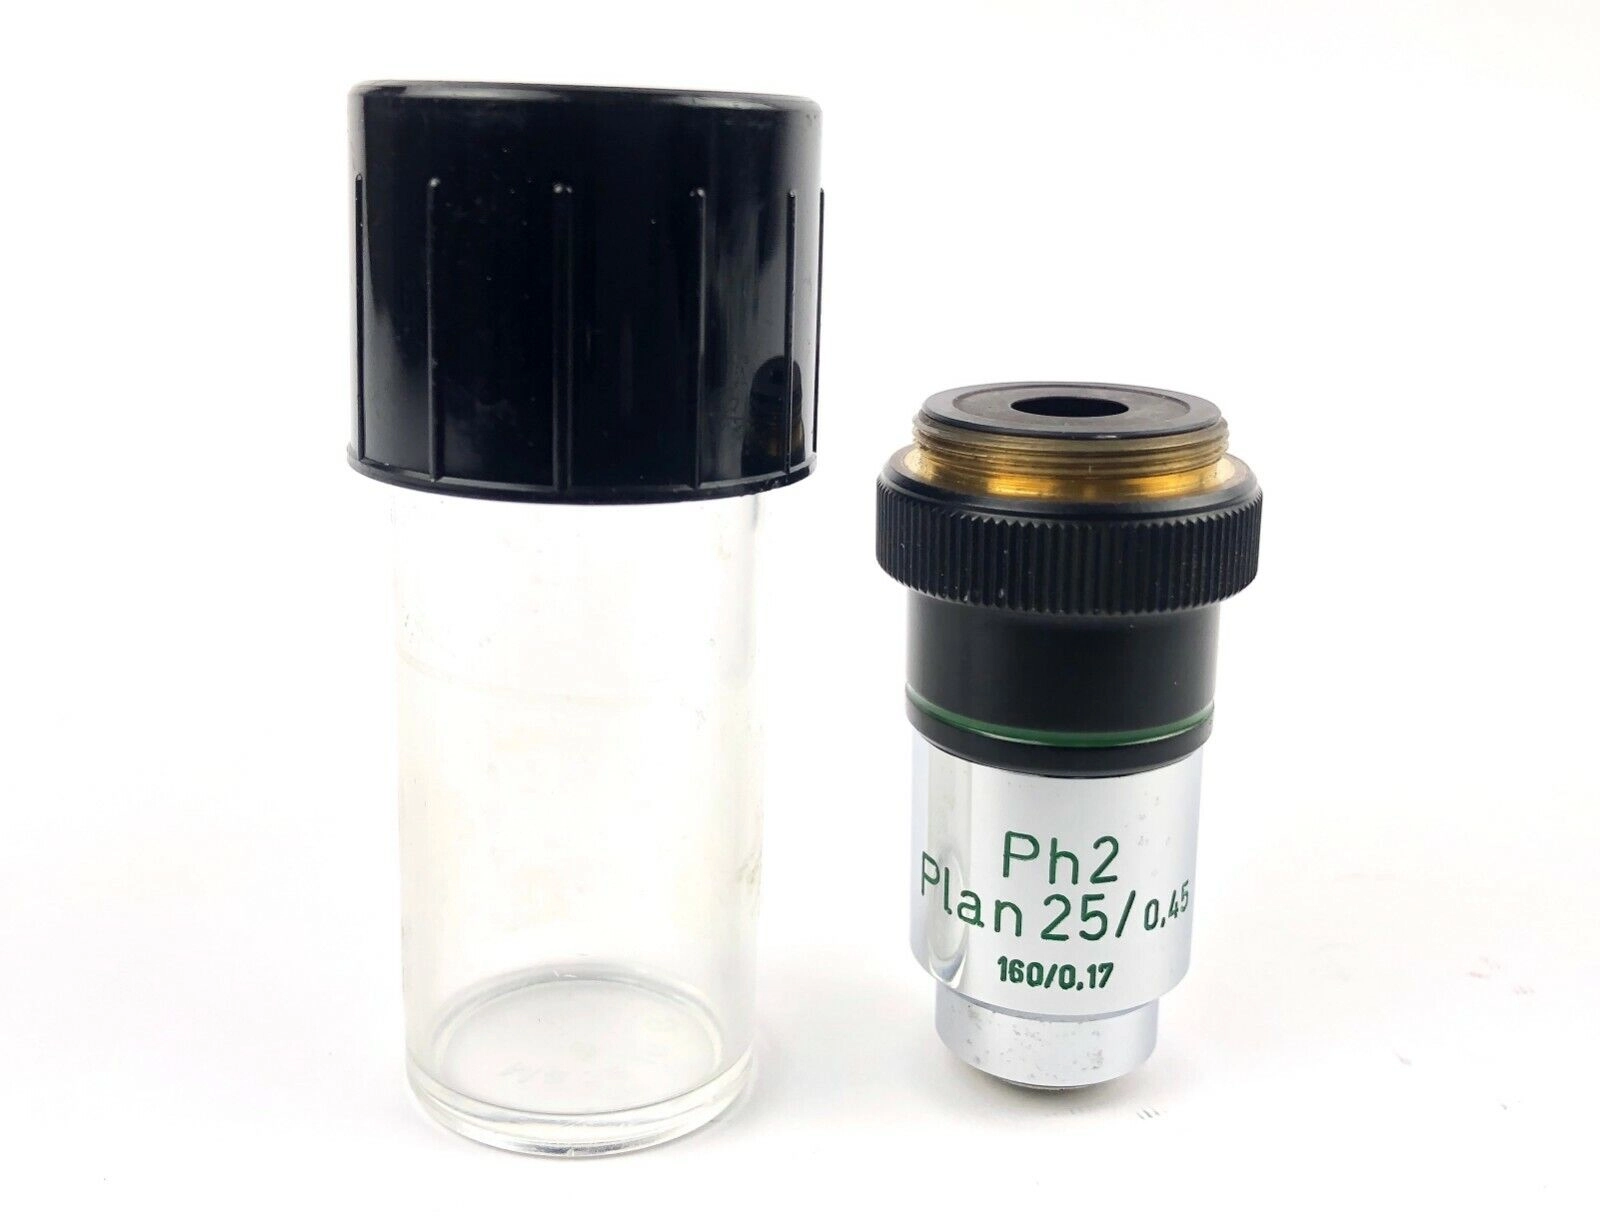 Carl Zeiss Mikroskop Objective Ph2 Plan 25x, 0.45 